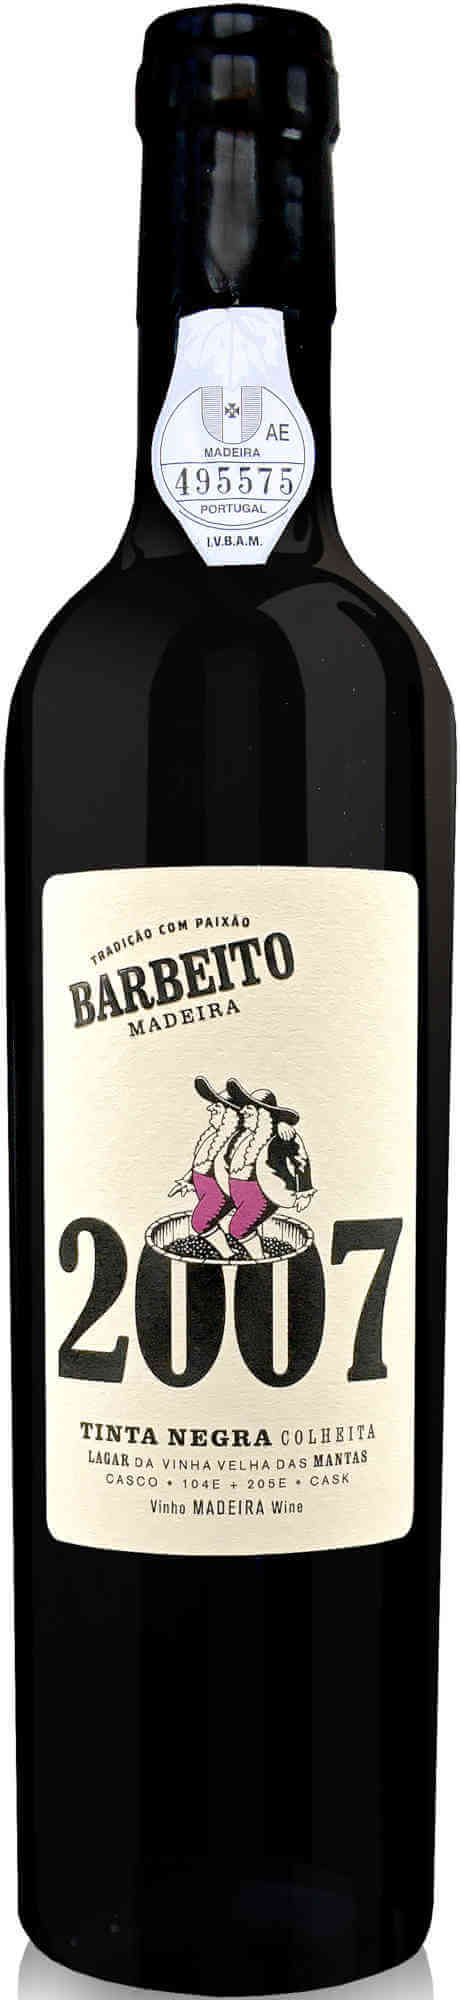 Barbeito-Tinta-Negra-Colheita-2007